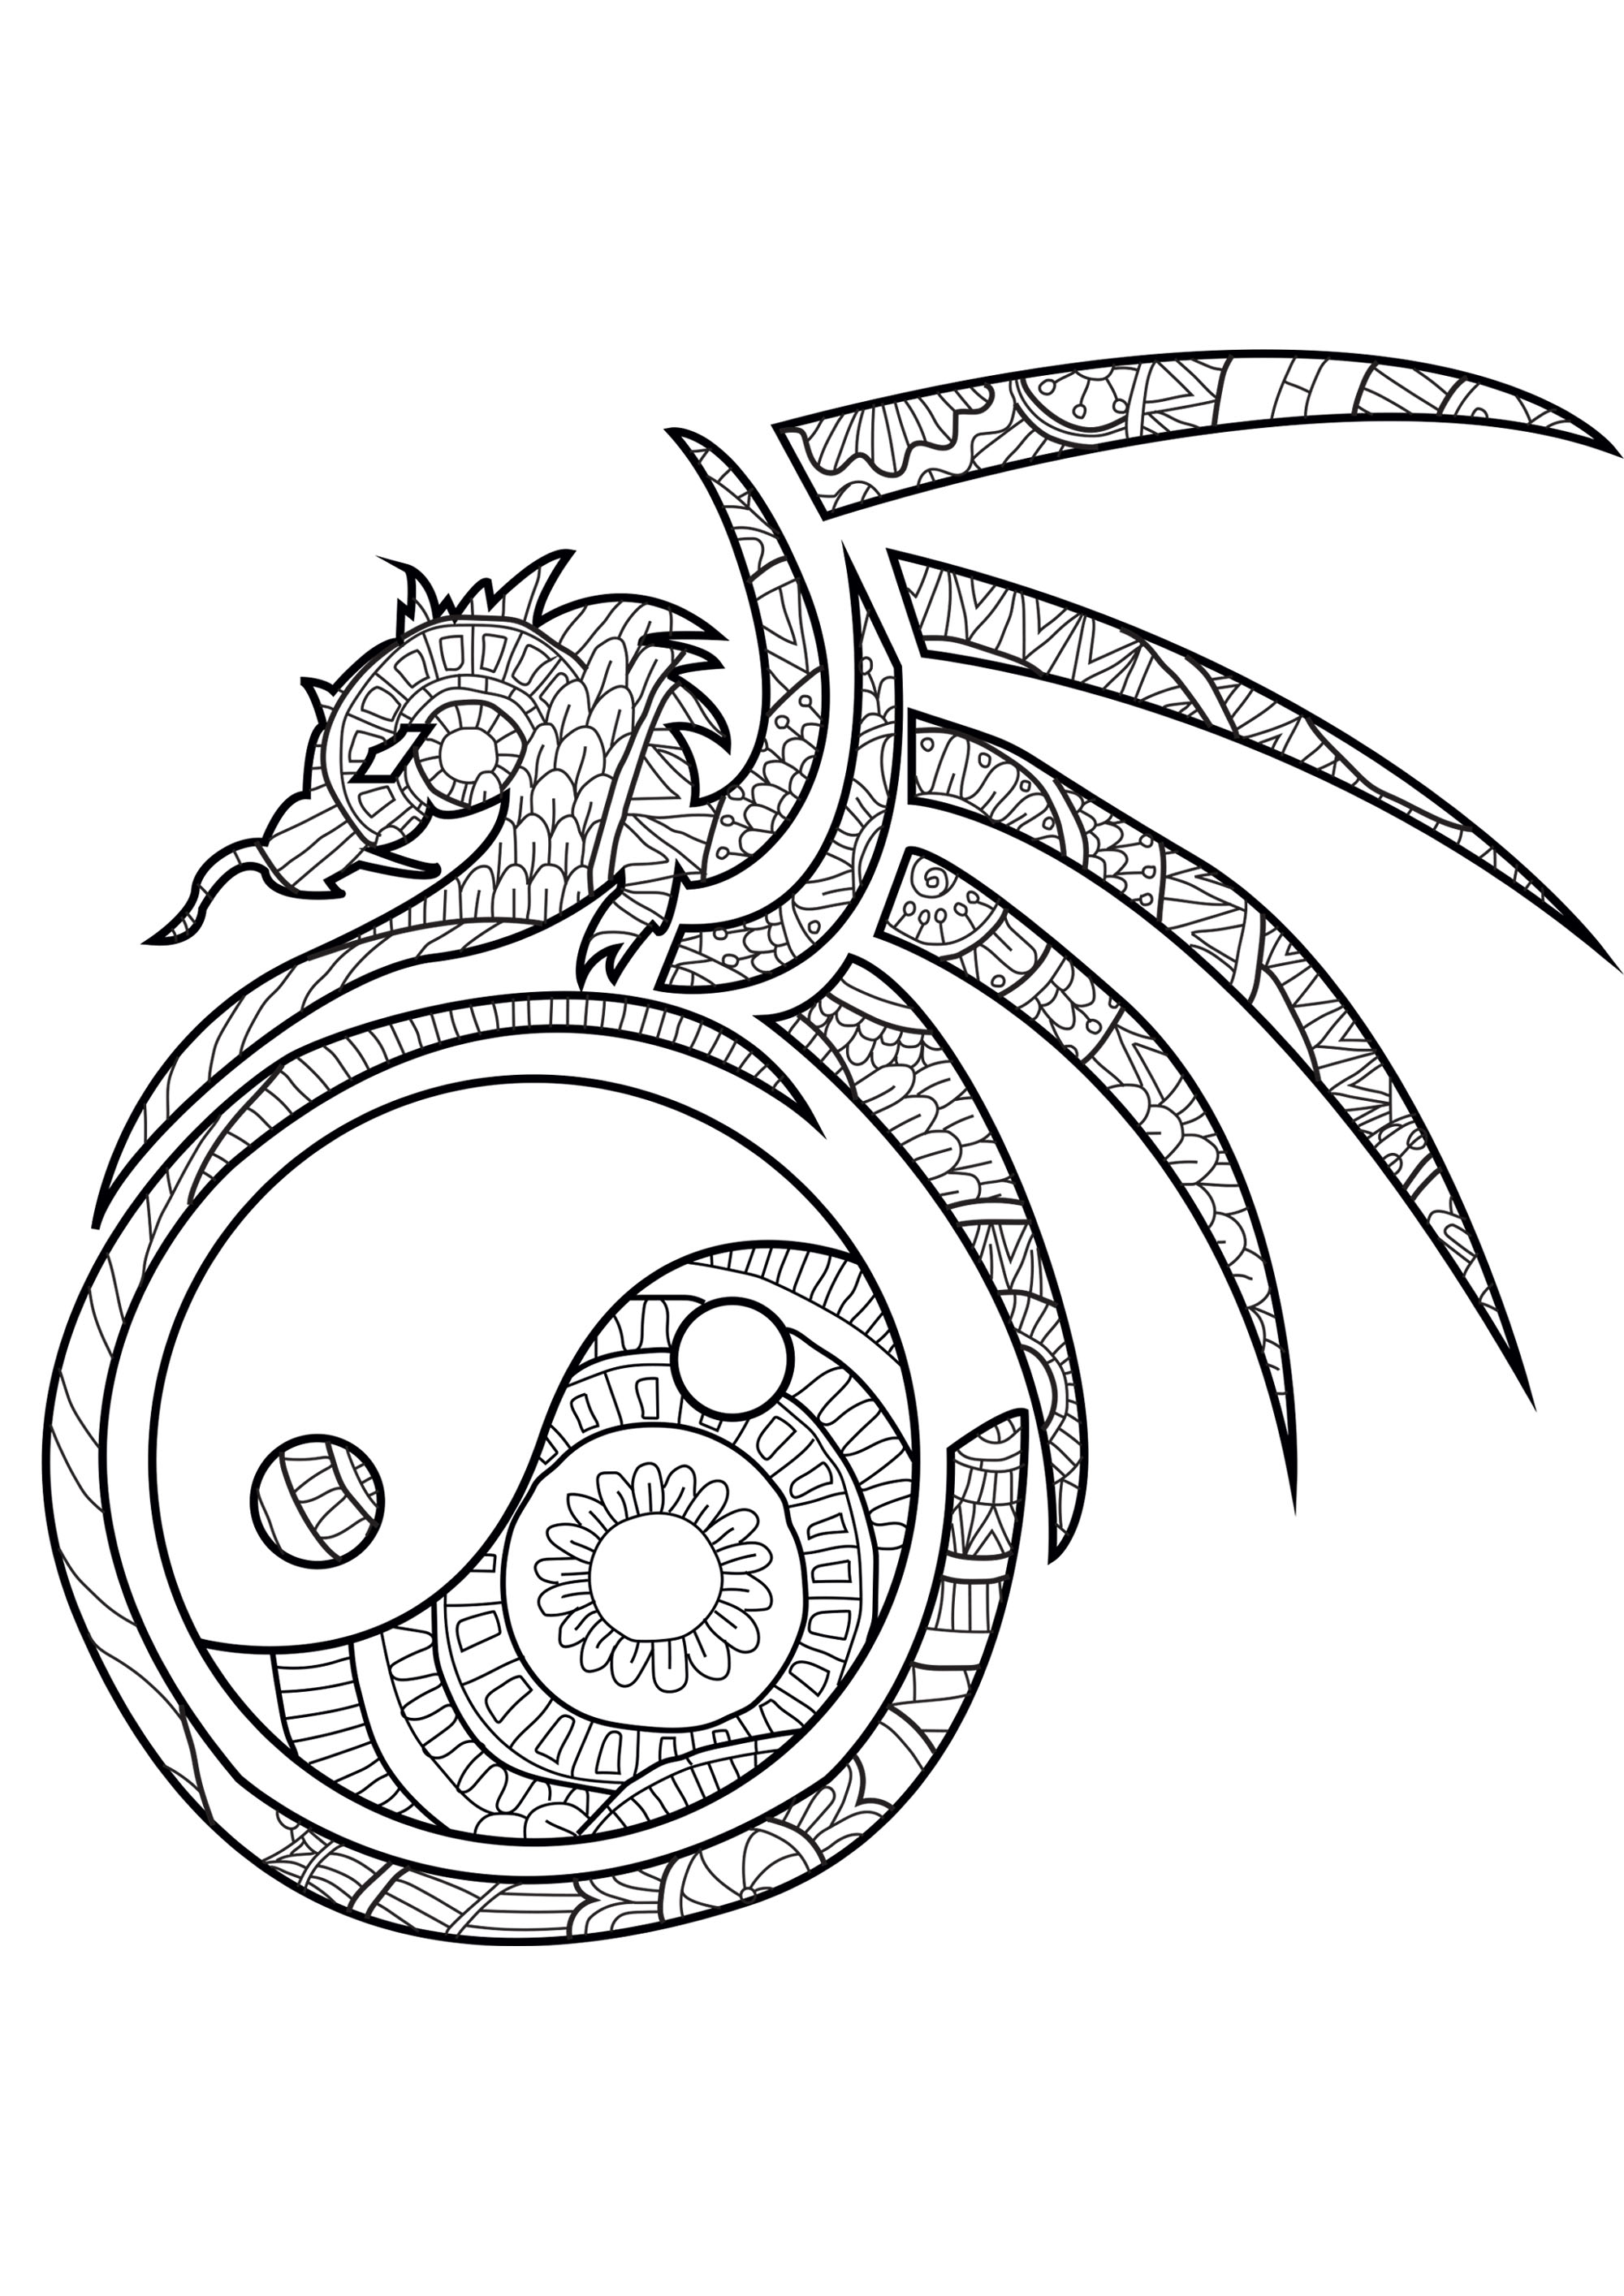 O equilíbrio do Yin & Yang num desenho com um dragão cheio de padrões harmoniosos, Artista : Caillou